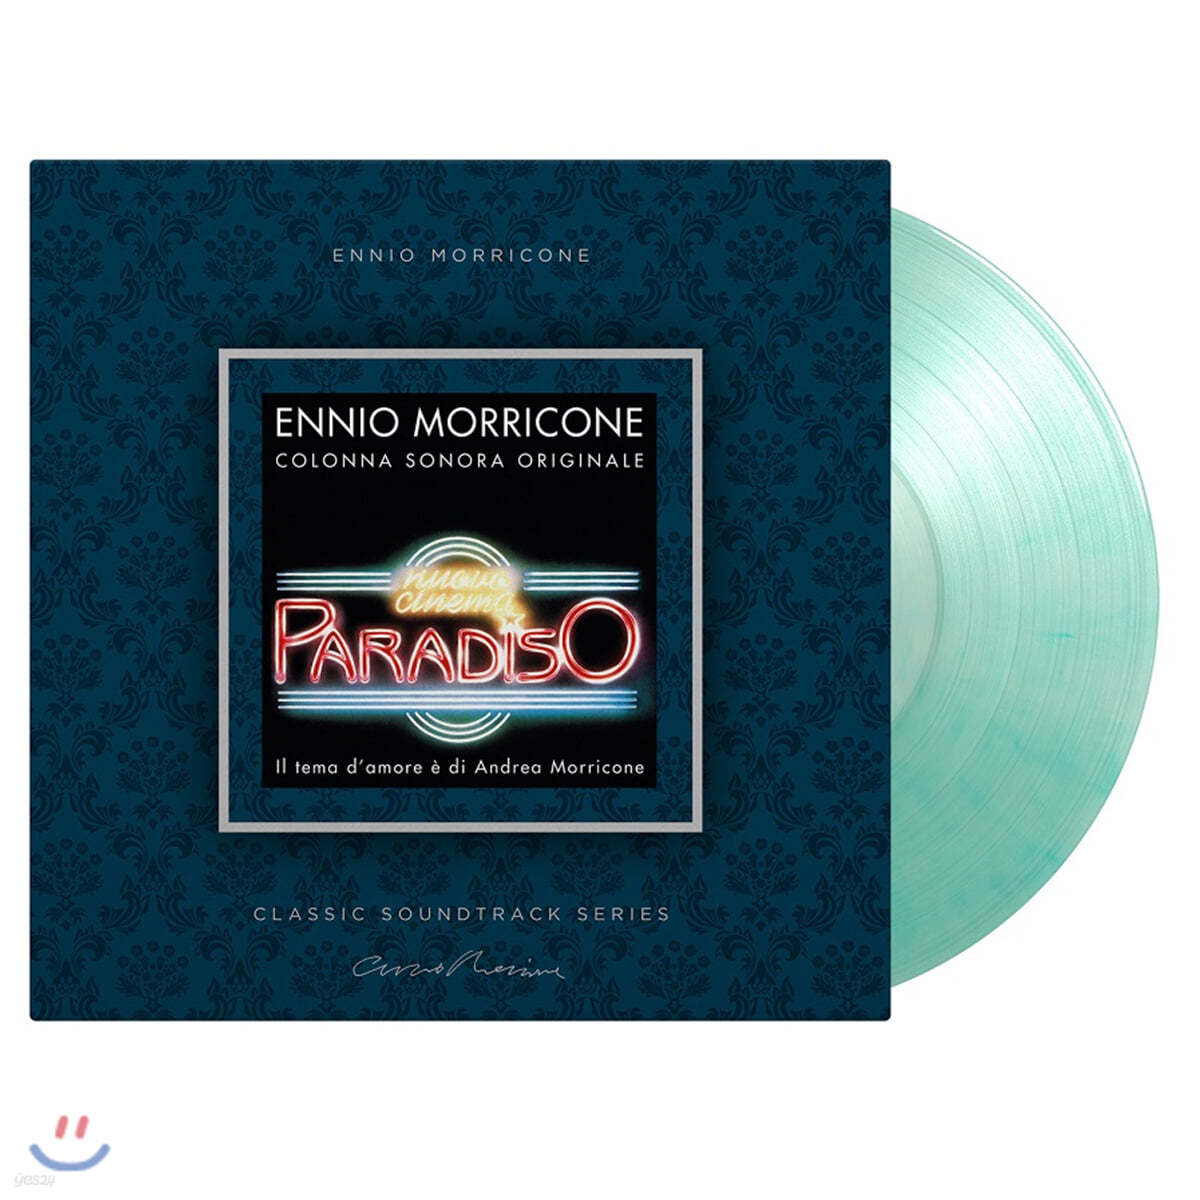 시네마 천국 영화음악 (Nuovo Cinema Paradiso OST by Ennio Morricone 엔니오 모리꼬네) [스카이블루 마블 컬러 LP]